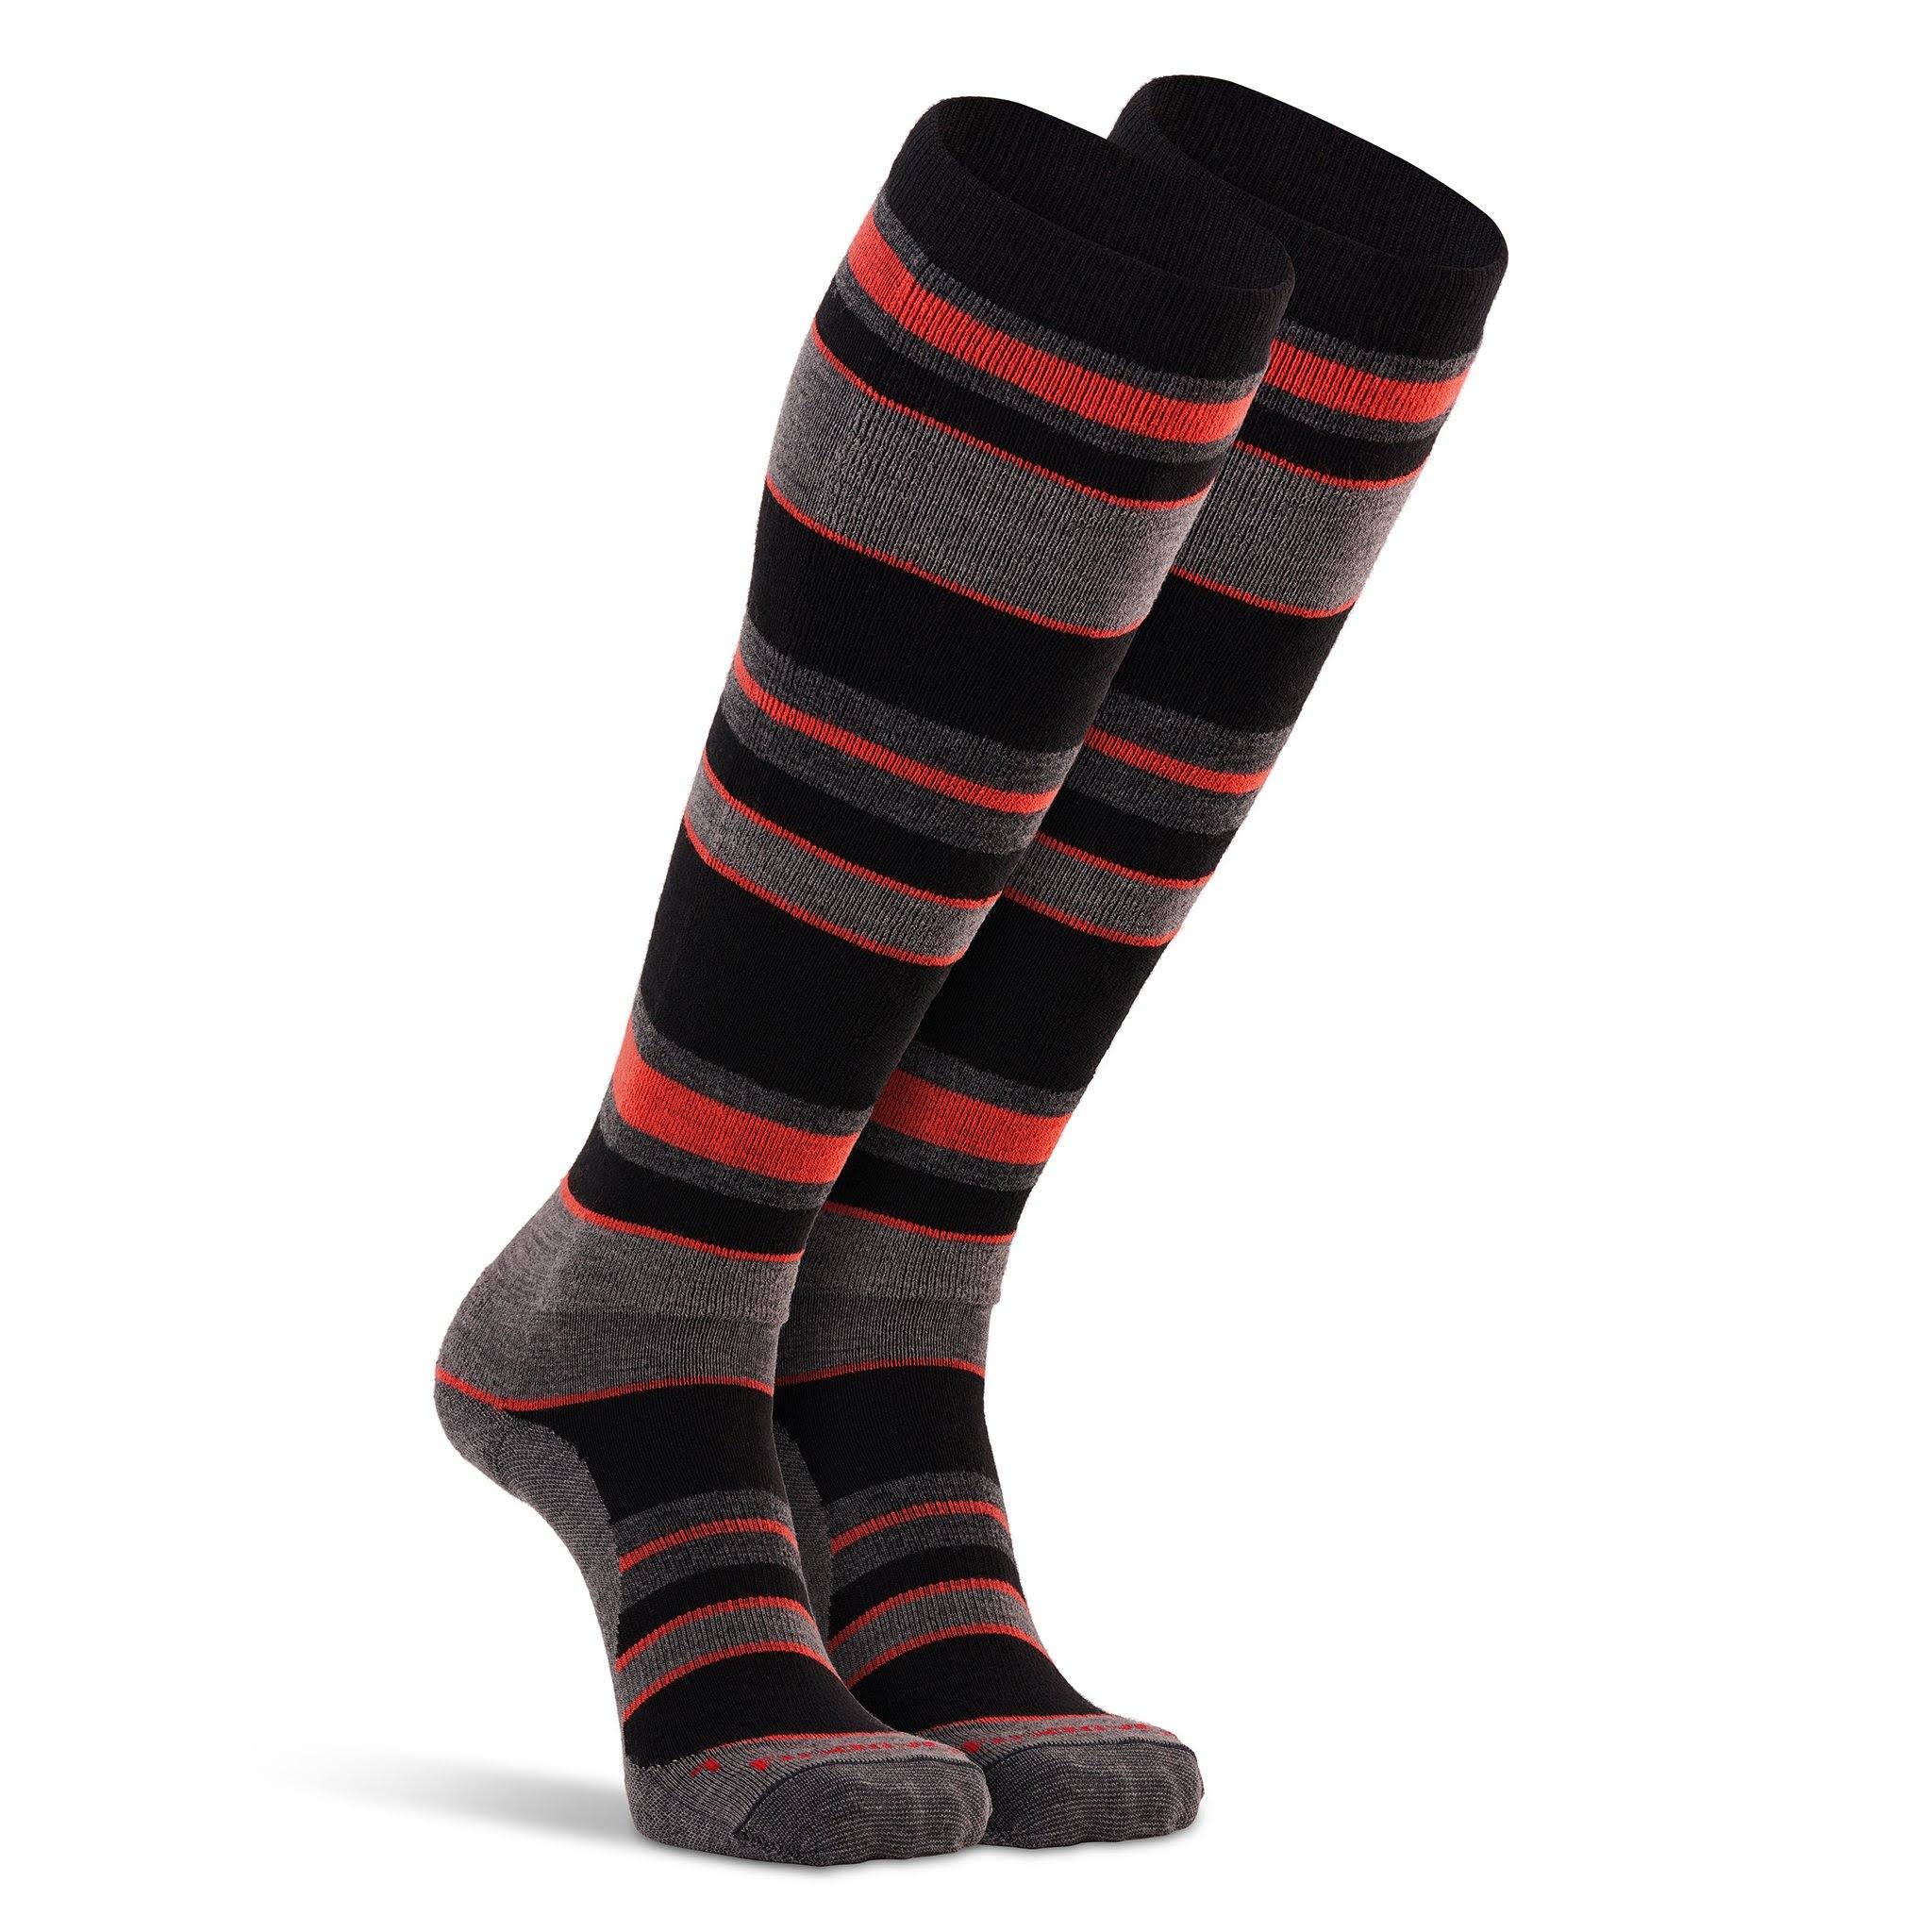 Lift Lightweight Over-the-Calf Sock - Fox River Socks Black/Orange / Large